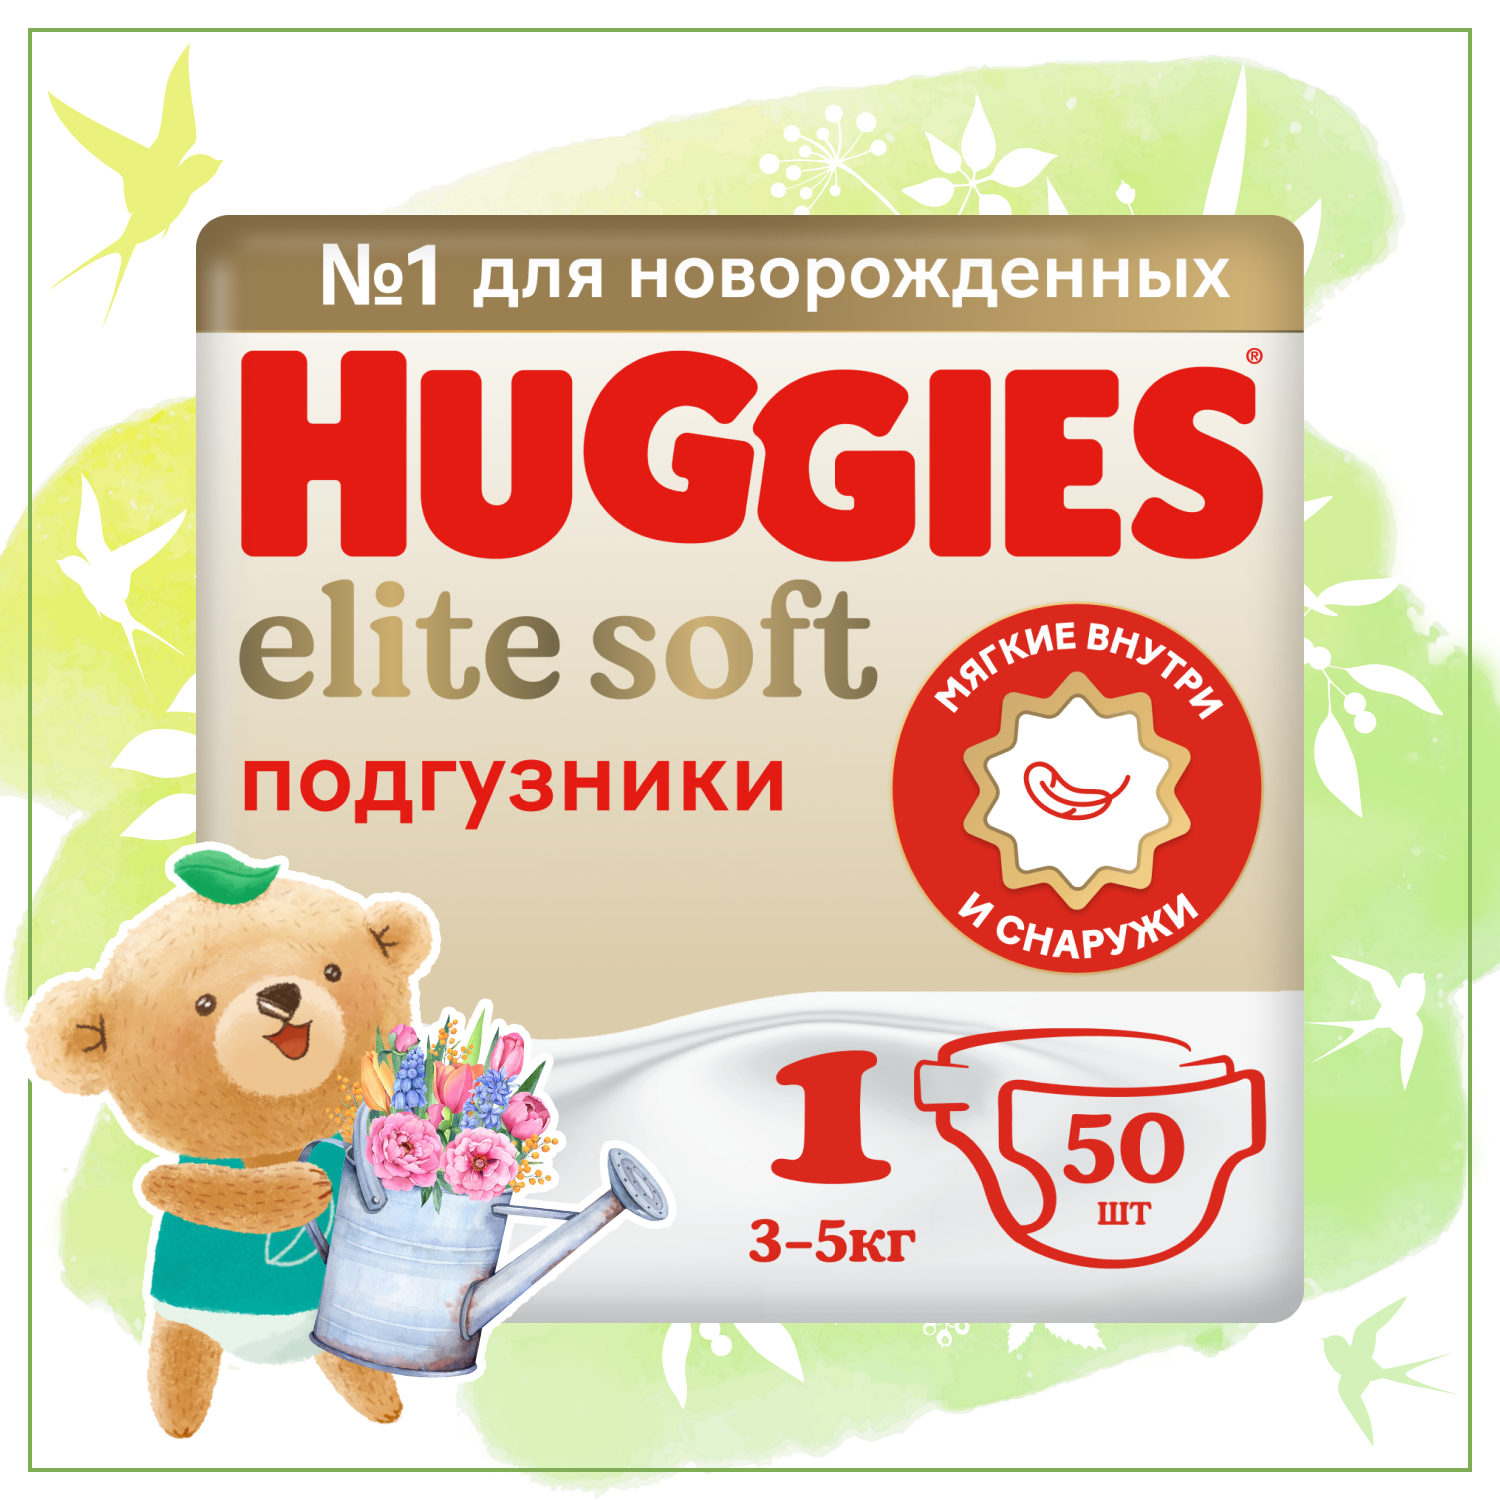 Подгузники Huggies Elite Soft для новорожденных 1 3-5кг 50шт - фото 1